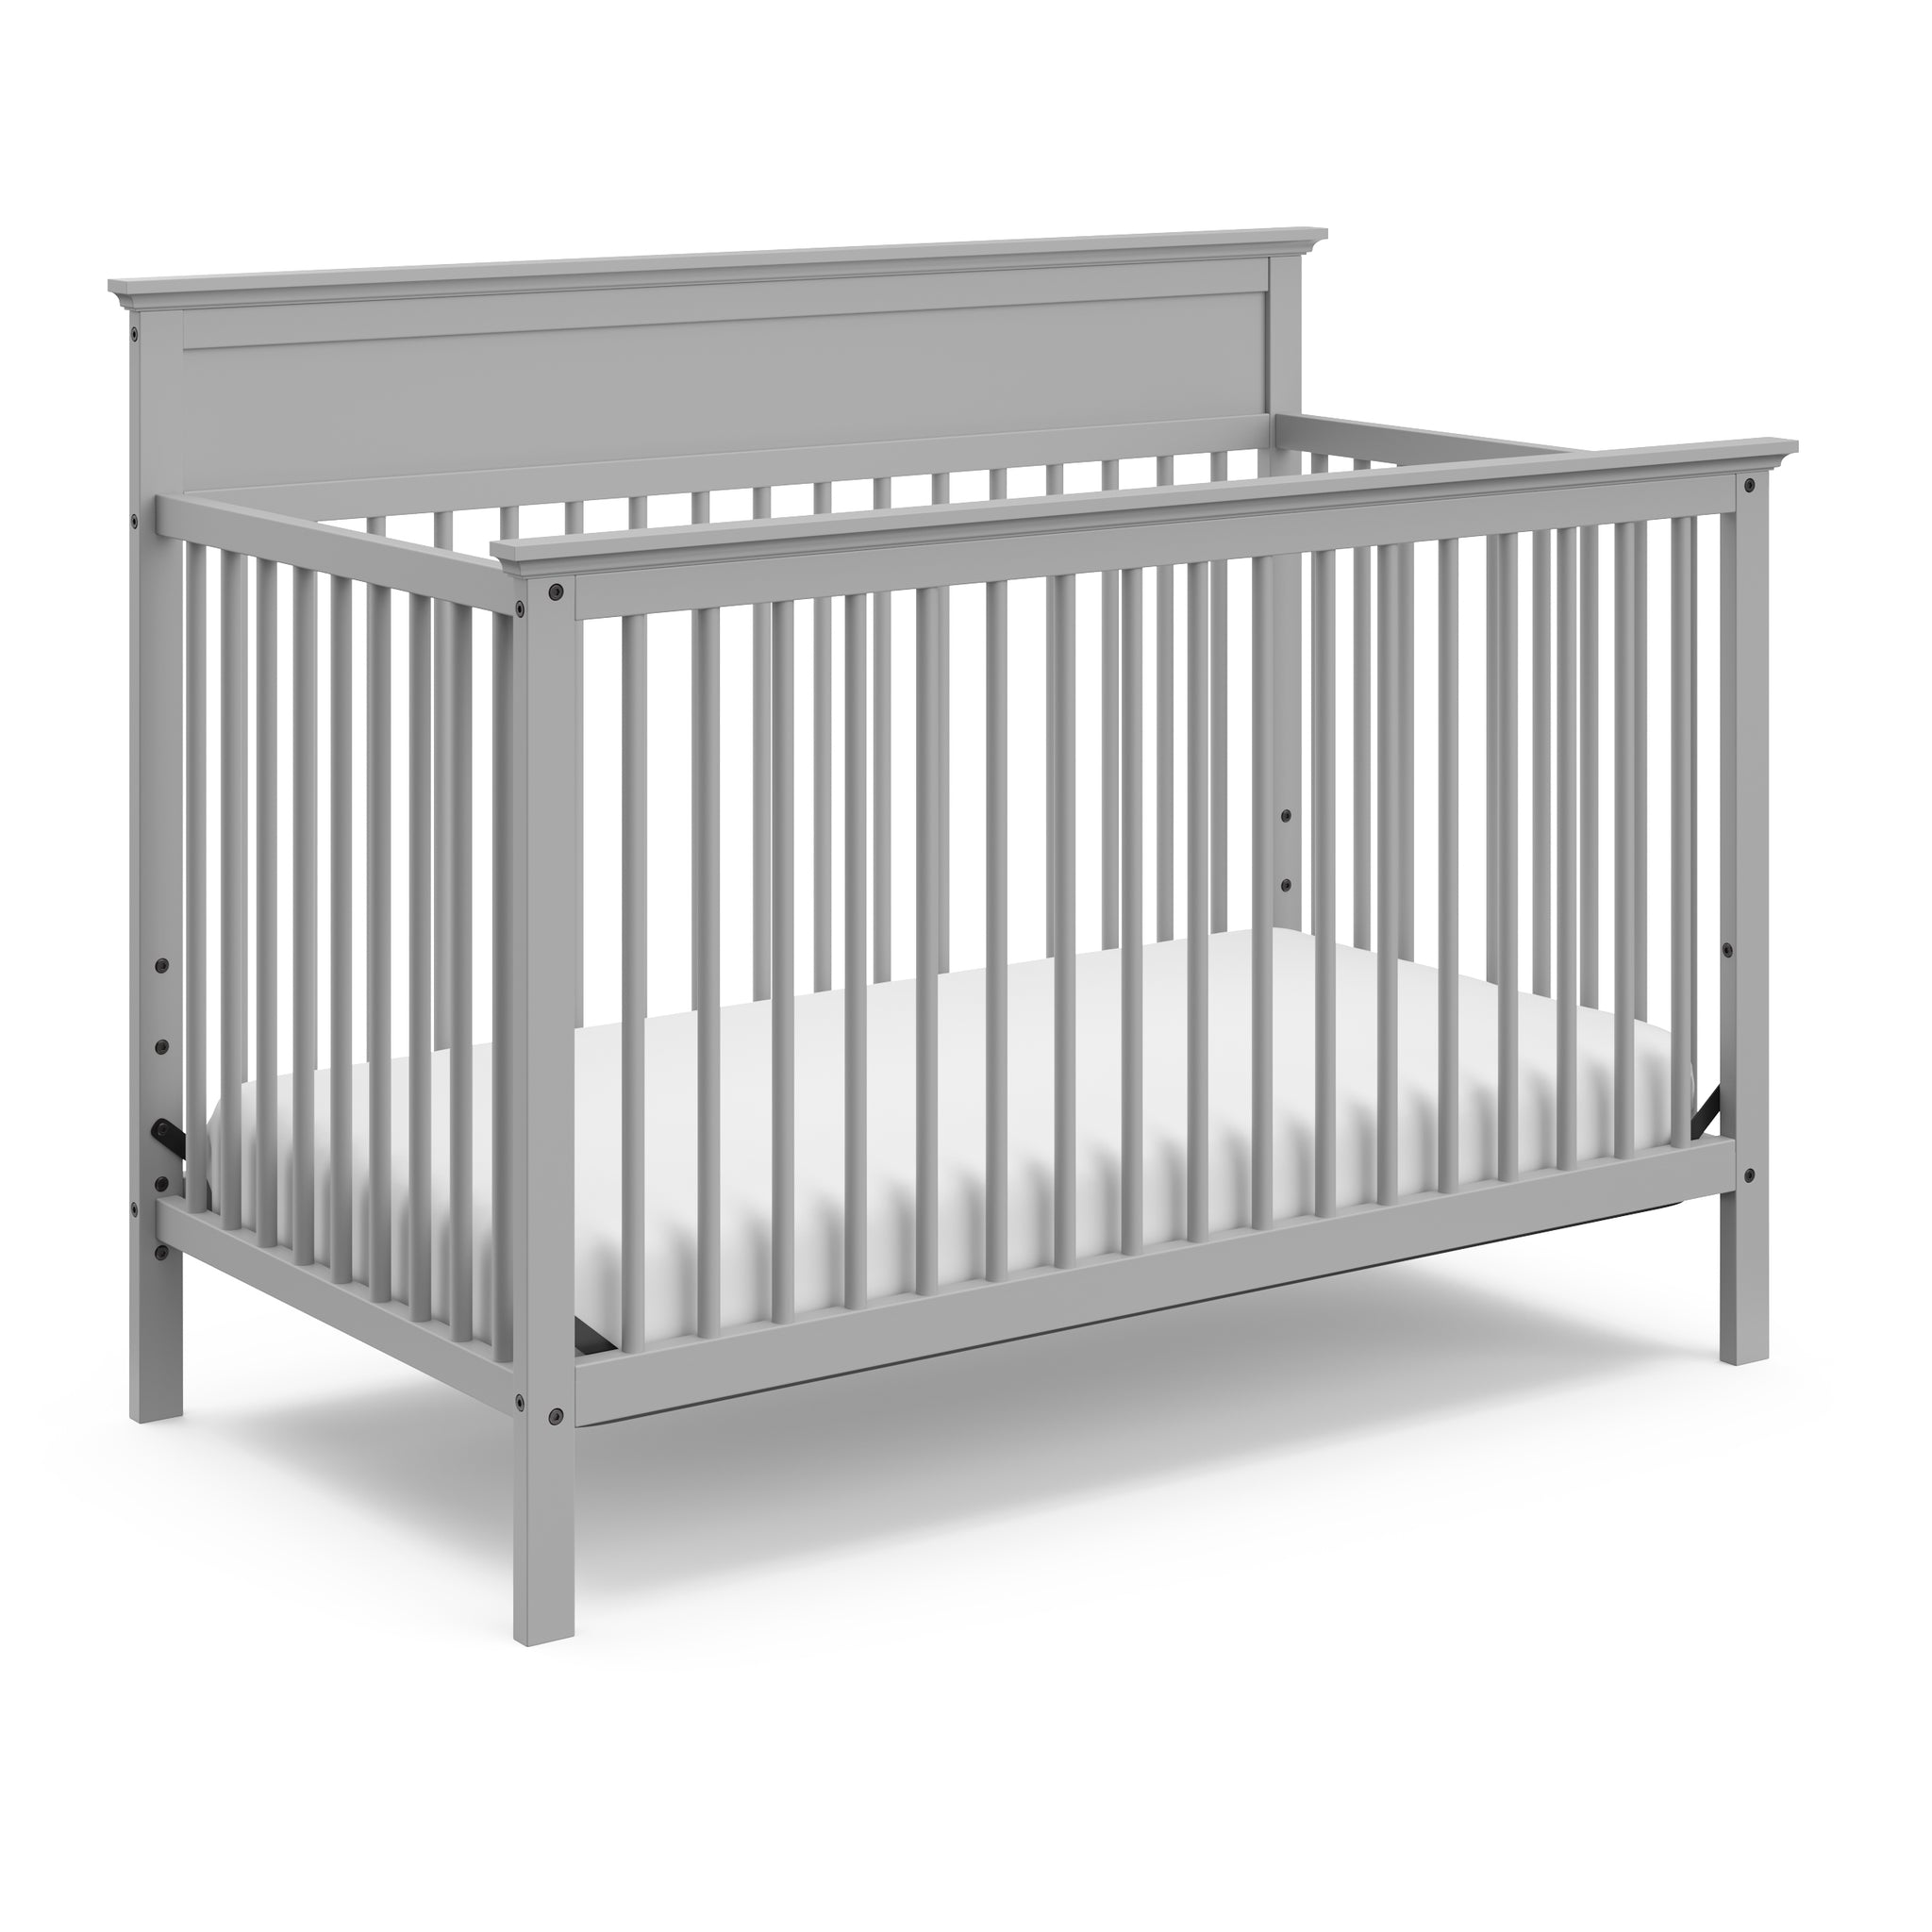 Pebble gray crib angled